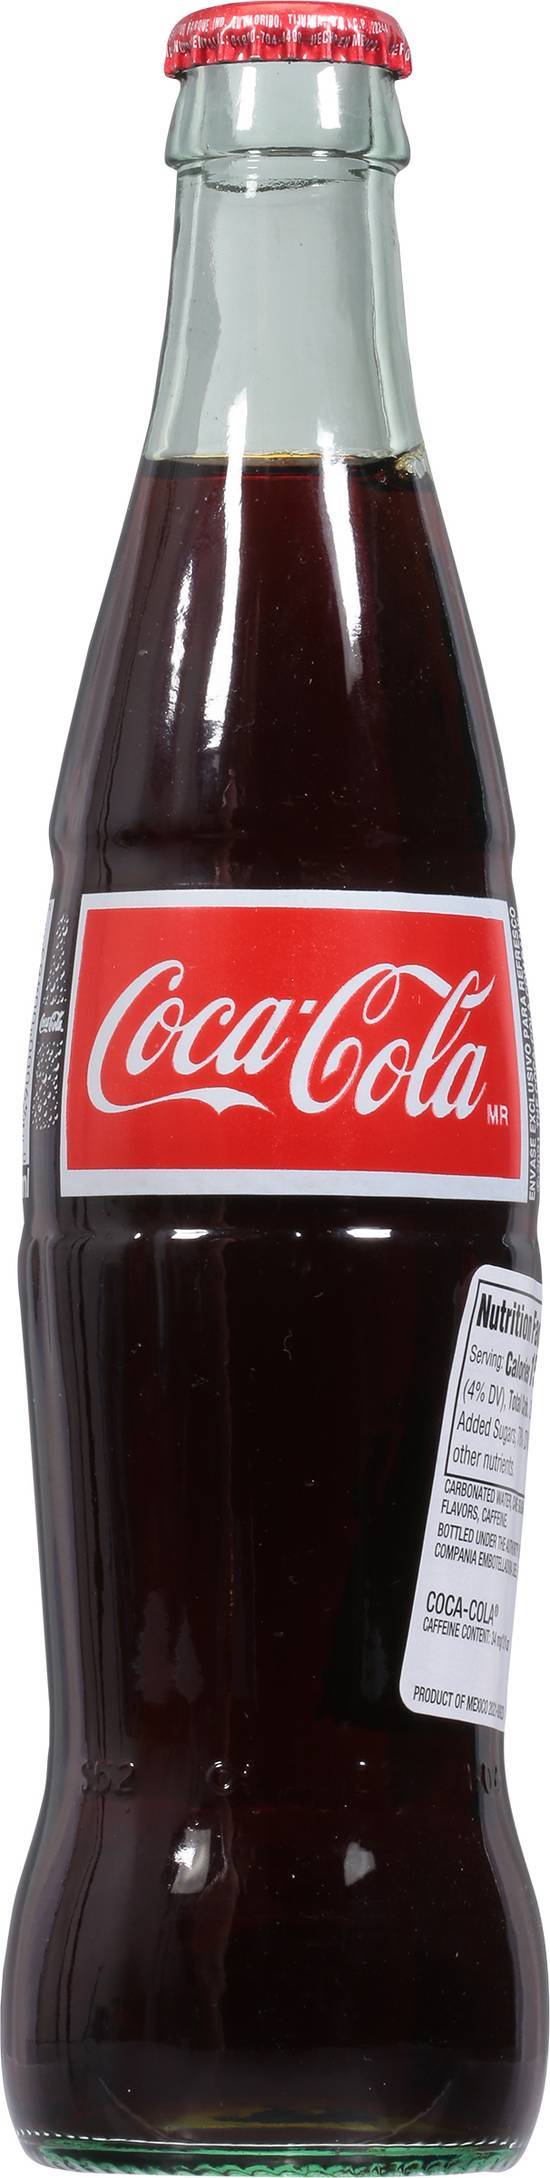 Coca-Cola Mexico Glass Bottle Soda (12 fl oz)